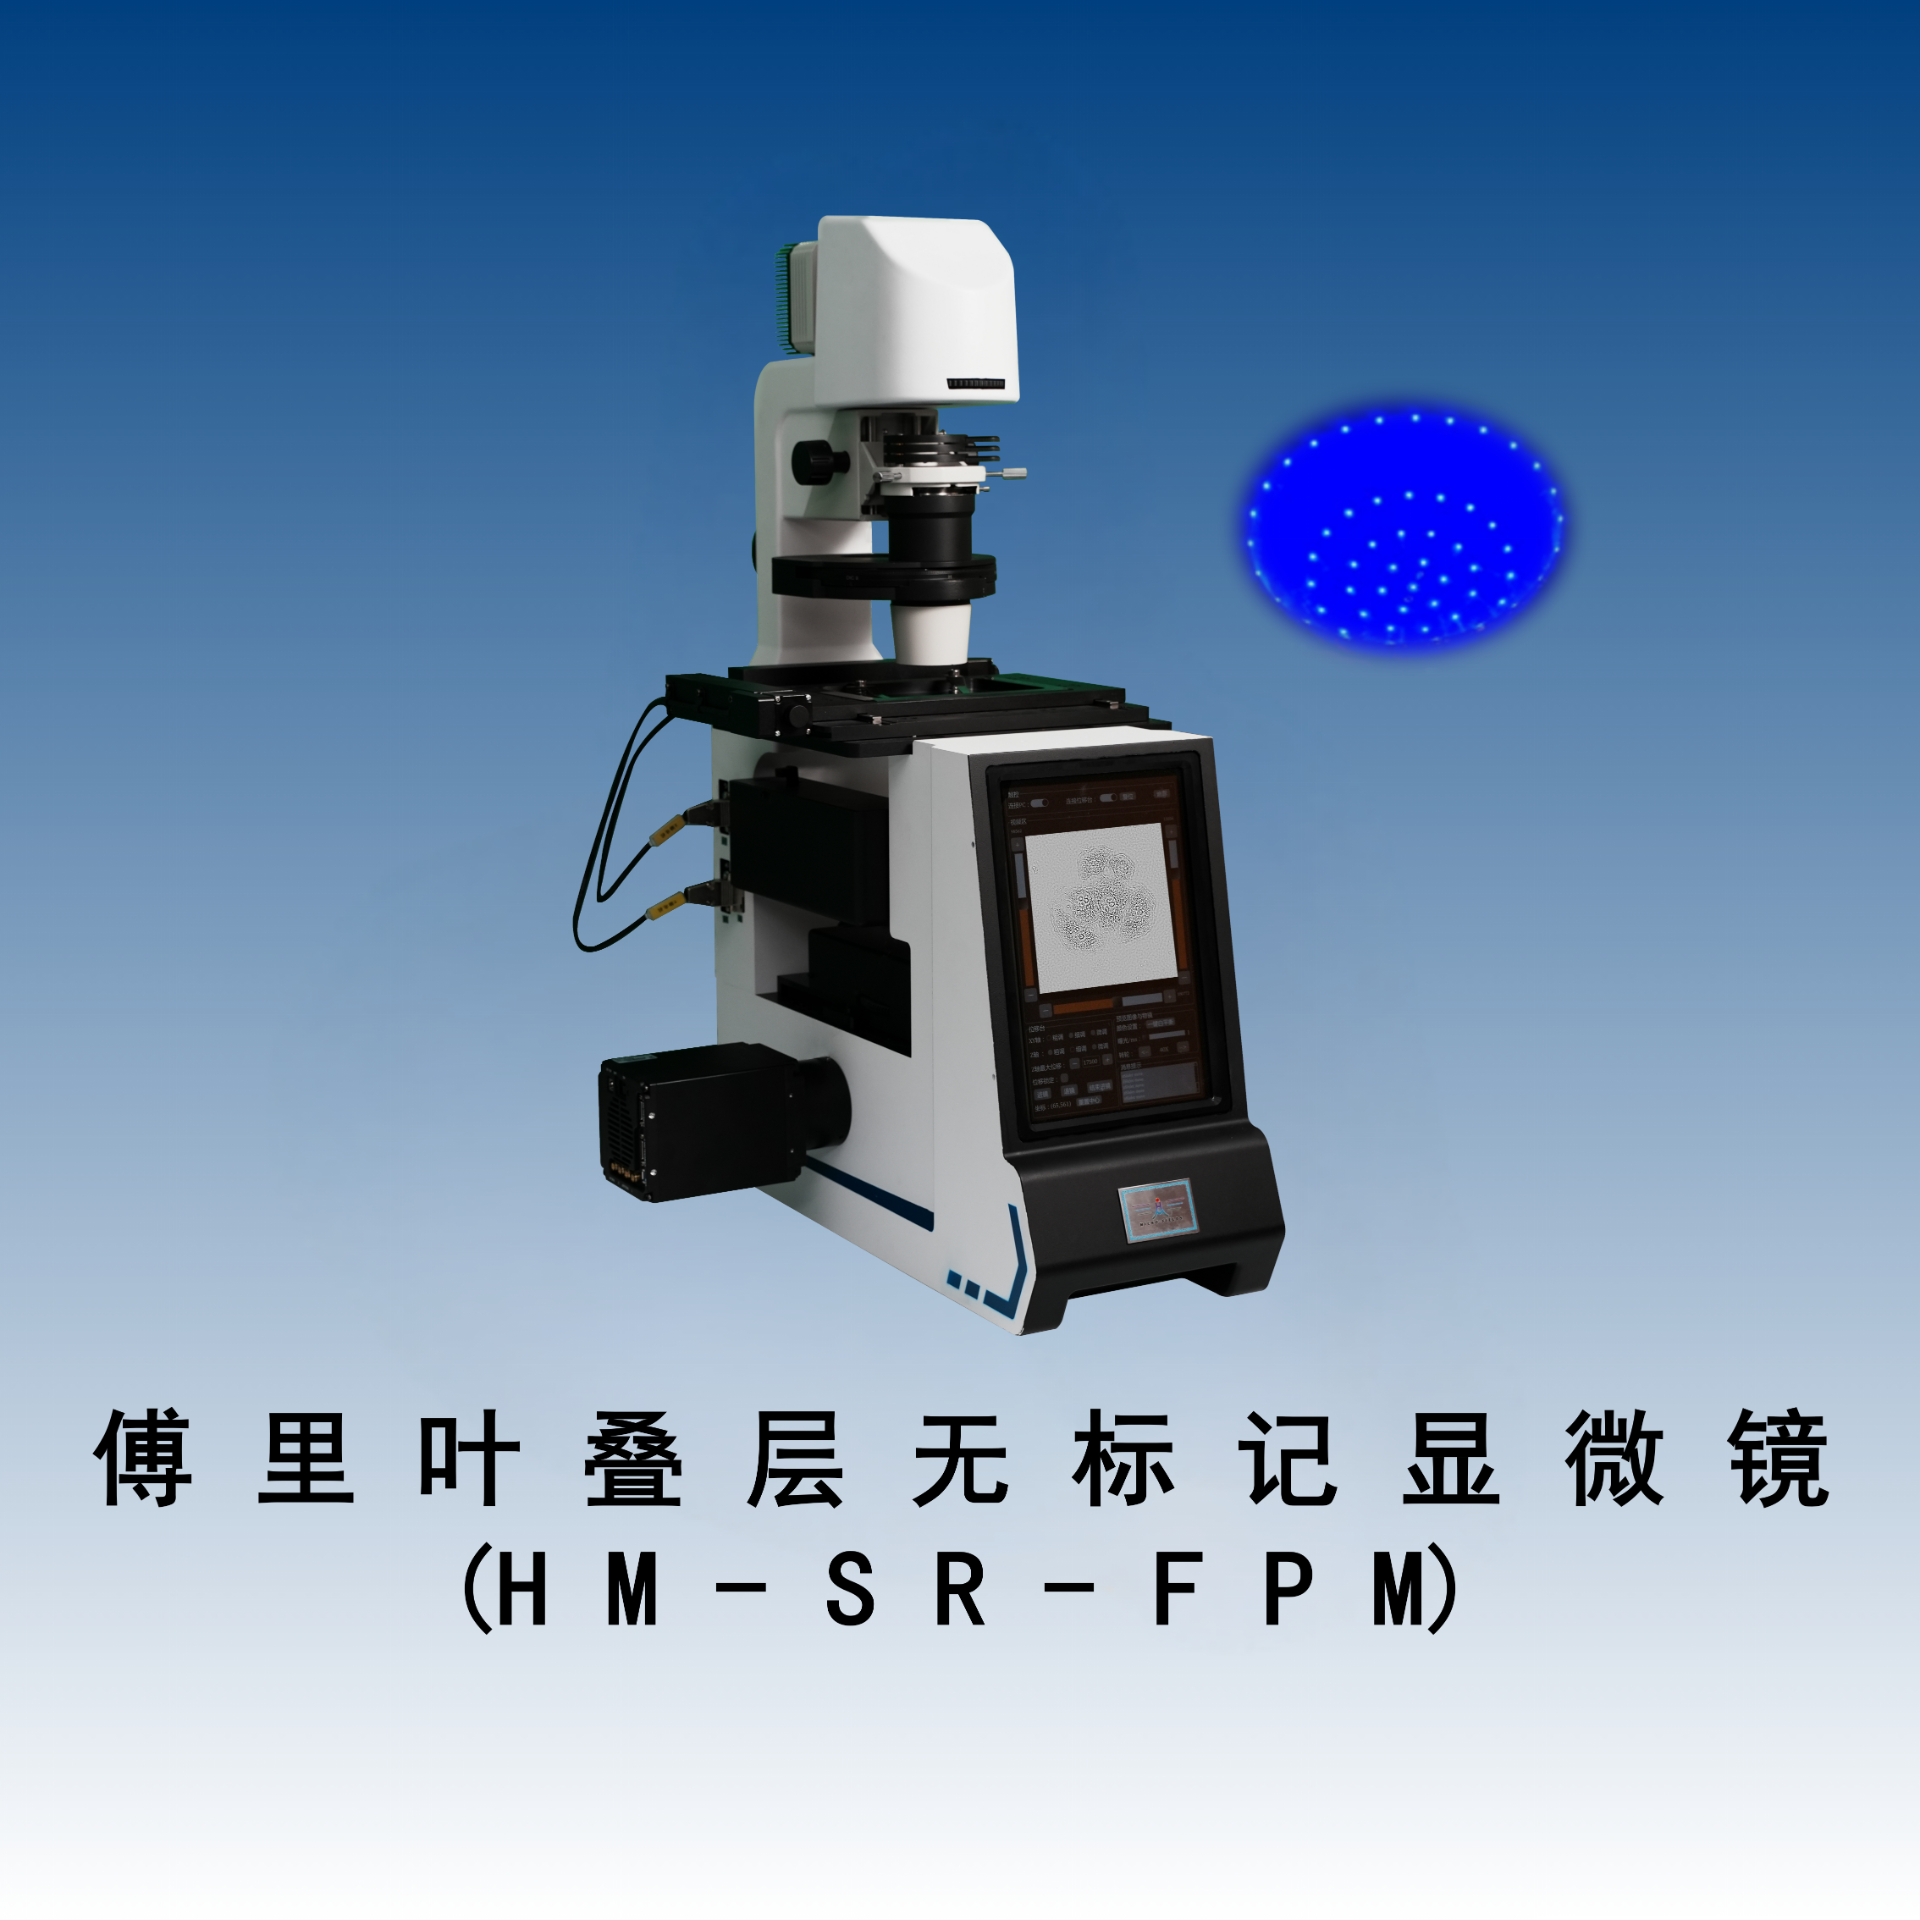 超分辨荧光-傅里叶无标记显微镜（ HM-SR-FPM）